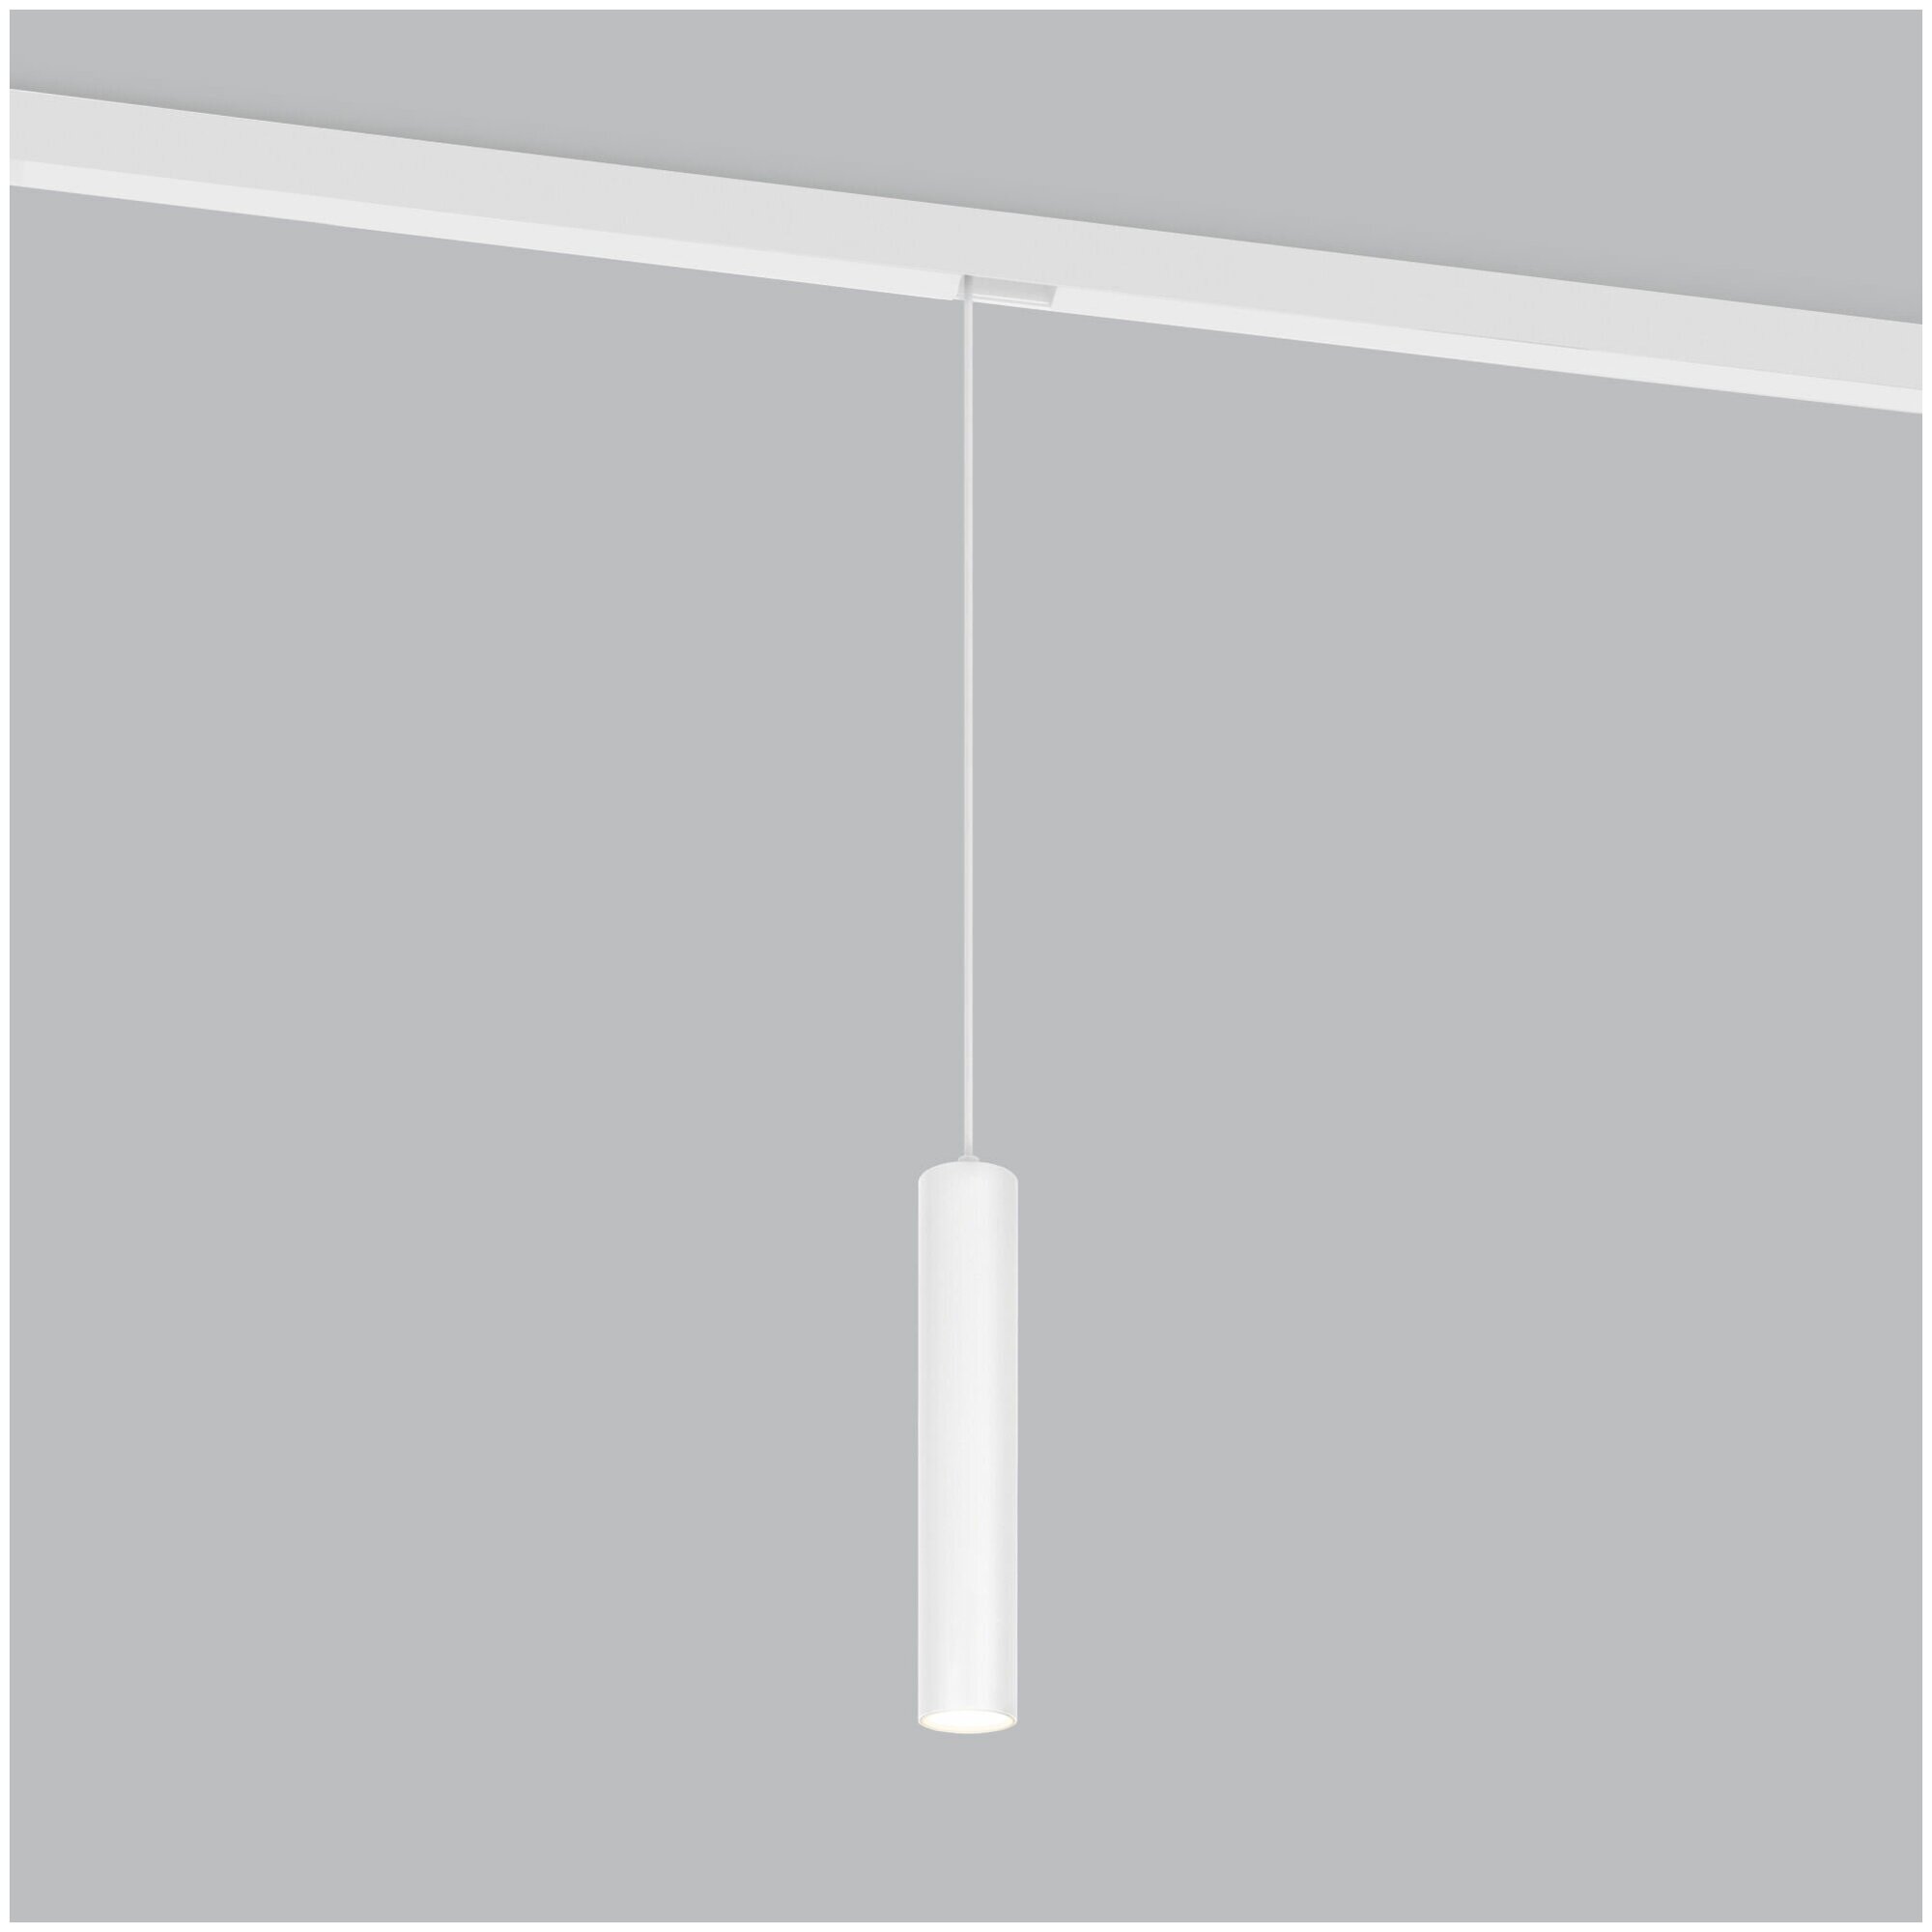 Трековый подвесной светодиодный светильник Elektrostandard Slim Magnetic P01 85014/01, 6 Вт, 4200 K, цвет белый